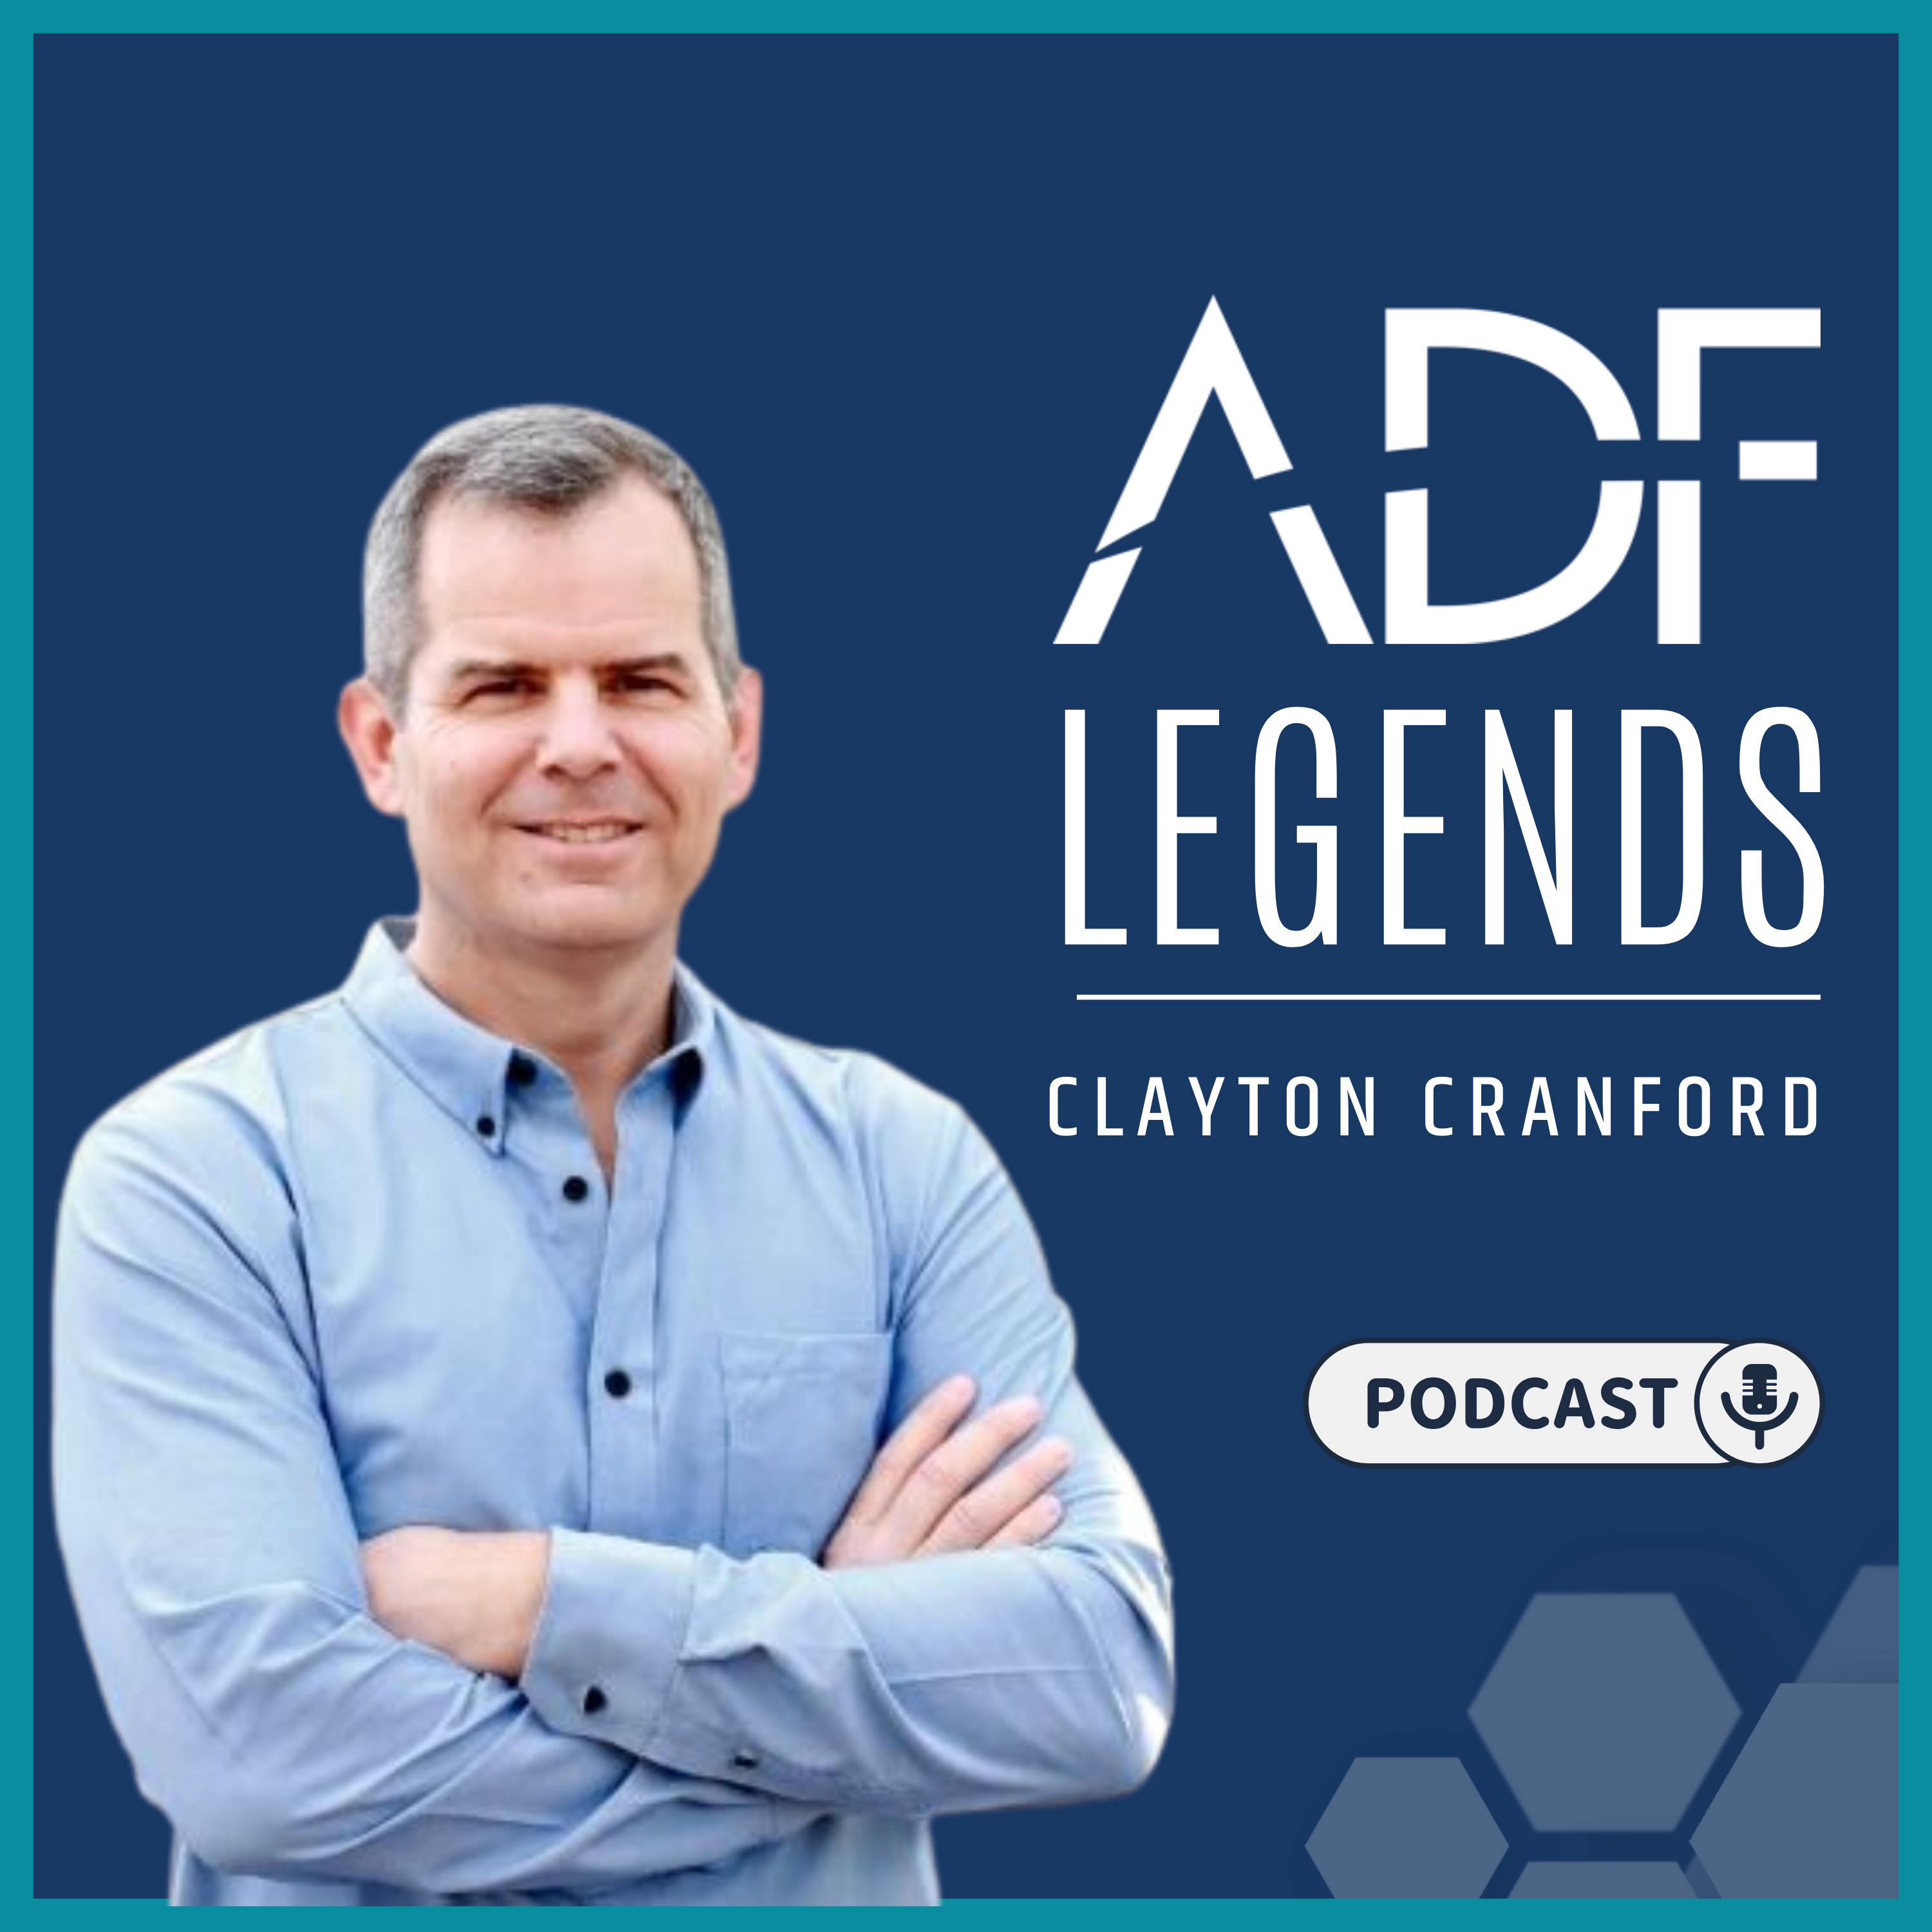 Clayton Cranford Spotify - ADF LEGENDS